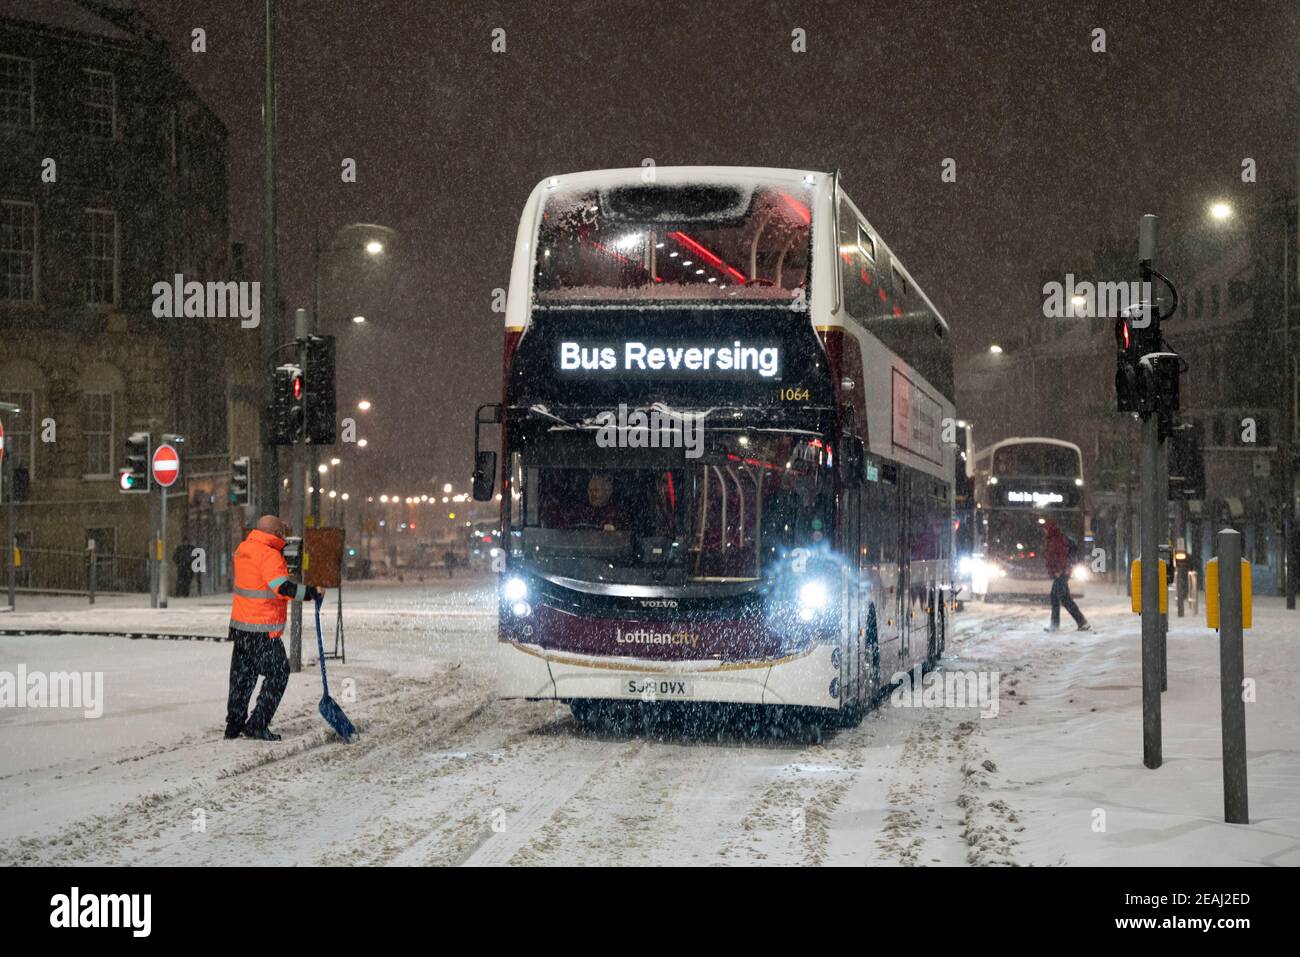 Édimbourg, Écosse, Royaume-Uni. 10 févr. 2021. Le gros gel se poursuit au Royaume-Uni avec de la neige abondante de nuit et du matin, ce qui immobilise la circulation sur de nombreuses routes du centre-ville. Pic ; les bus Lothian sont bloqués sur Leith Walk à 6h du matin. Iain Masterton/Alamy Live News Banque D'Images